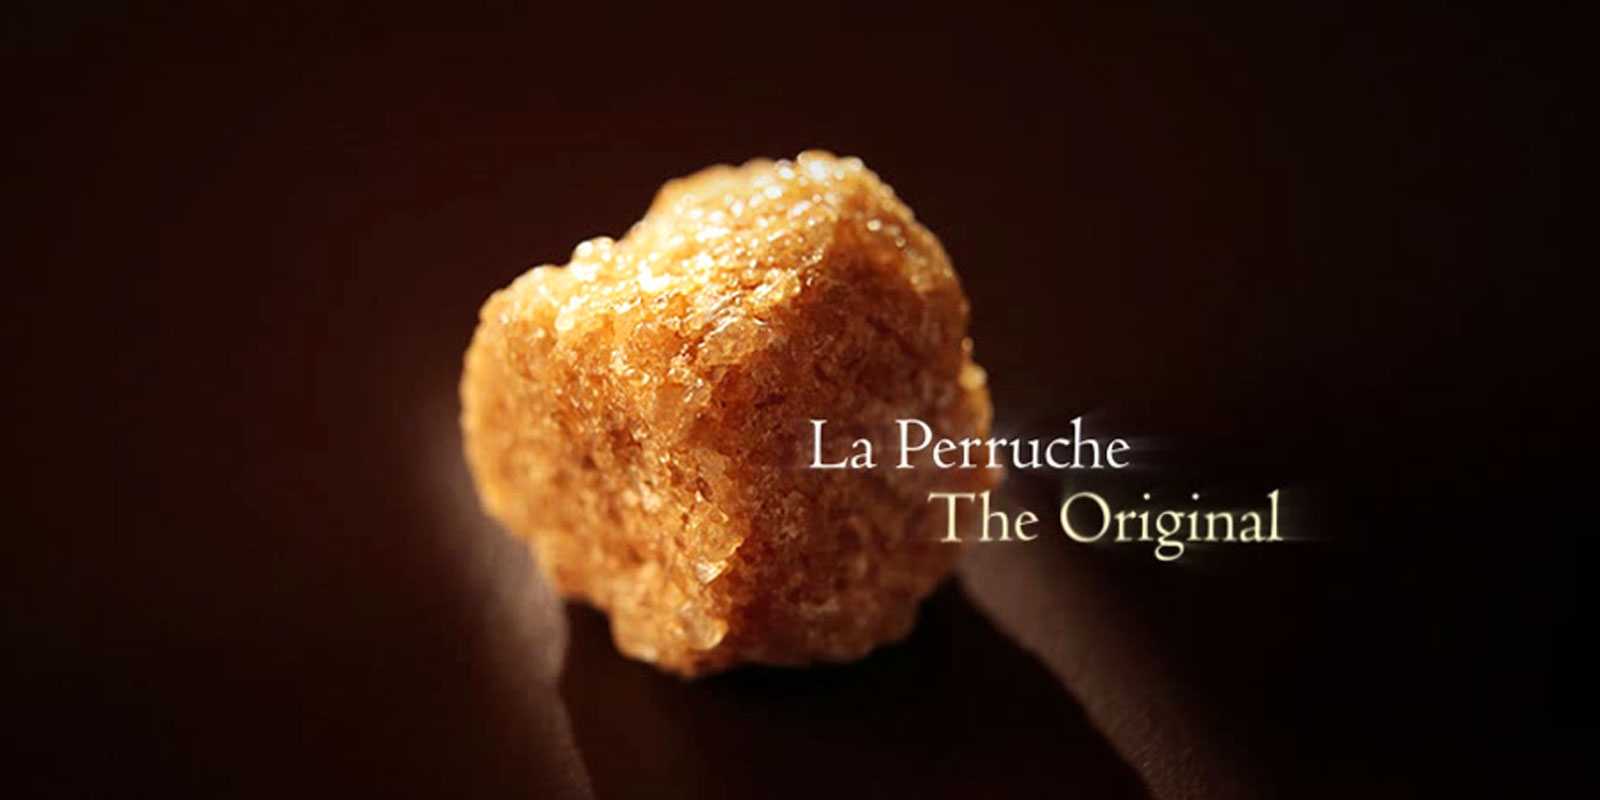 La Perruche - Rohrzucker La Perruche ist ein außergewöhnliches Produkt, mit einem speziellen Geschmack, der alle diejenigen erfreut, die feinen und hochentwickelten Geschmack schätzen. Ganz einfach zaubert er bloßes Vergnügen in Ihre Sinne. La Perruche gibt es in unregelmäßigen Zuckerklumpen in weiß oder goldbraun. Weiterhin noch als Cassonade bekannte Kristallform im Streuer.